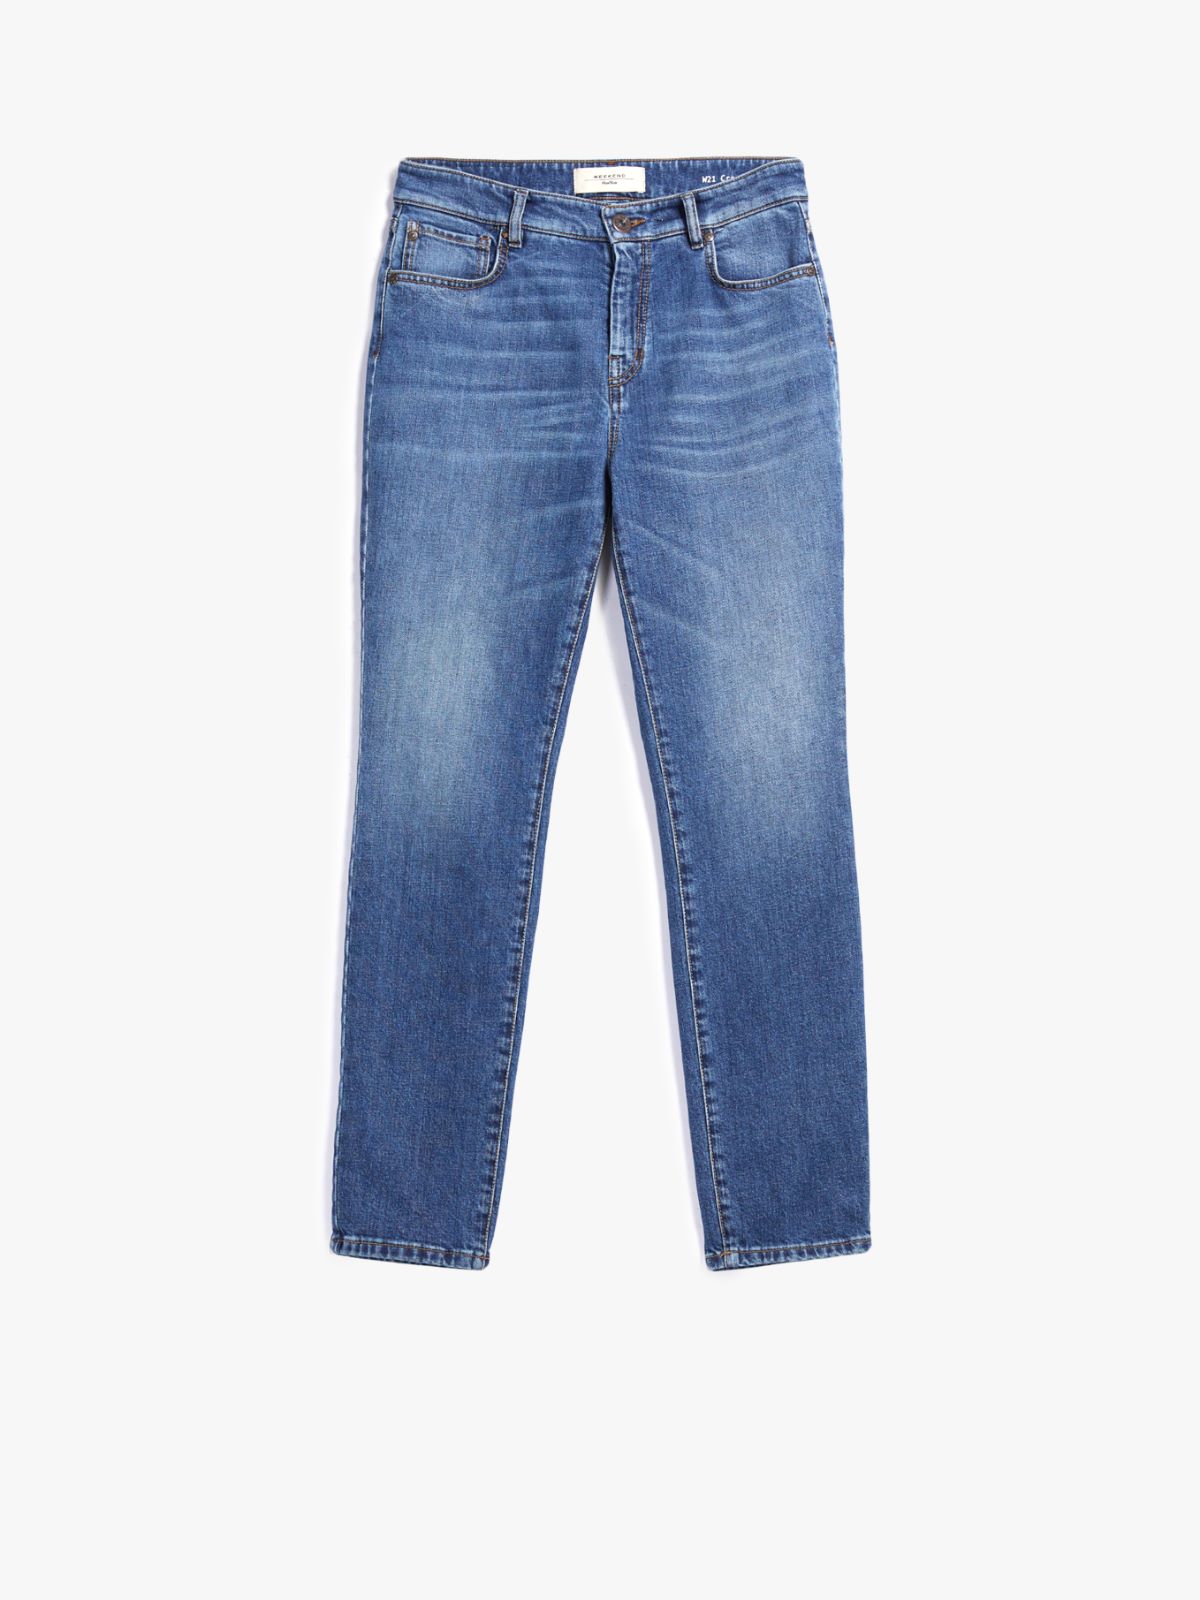 Cotton denim jeans - NAVY - Weekend Max Mara - 5